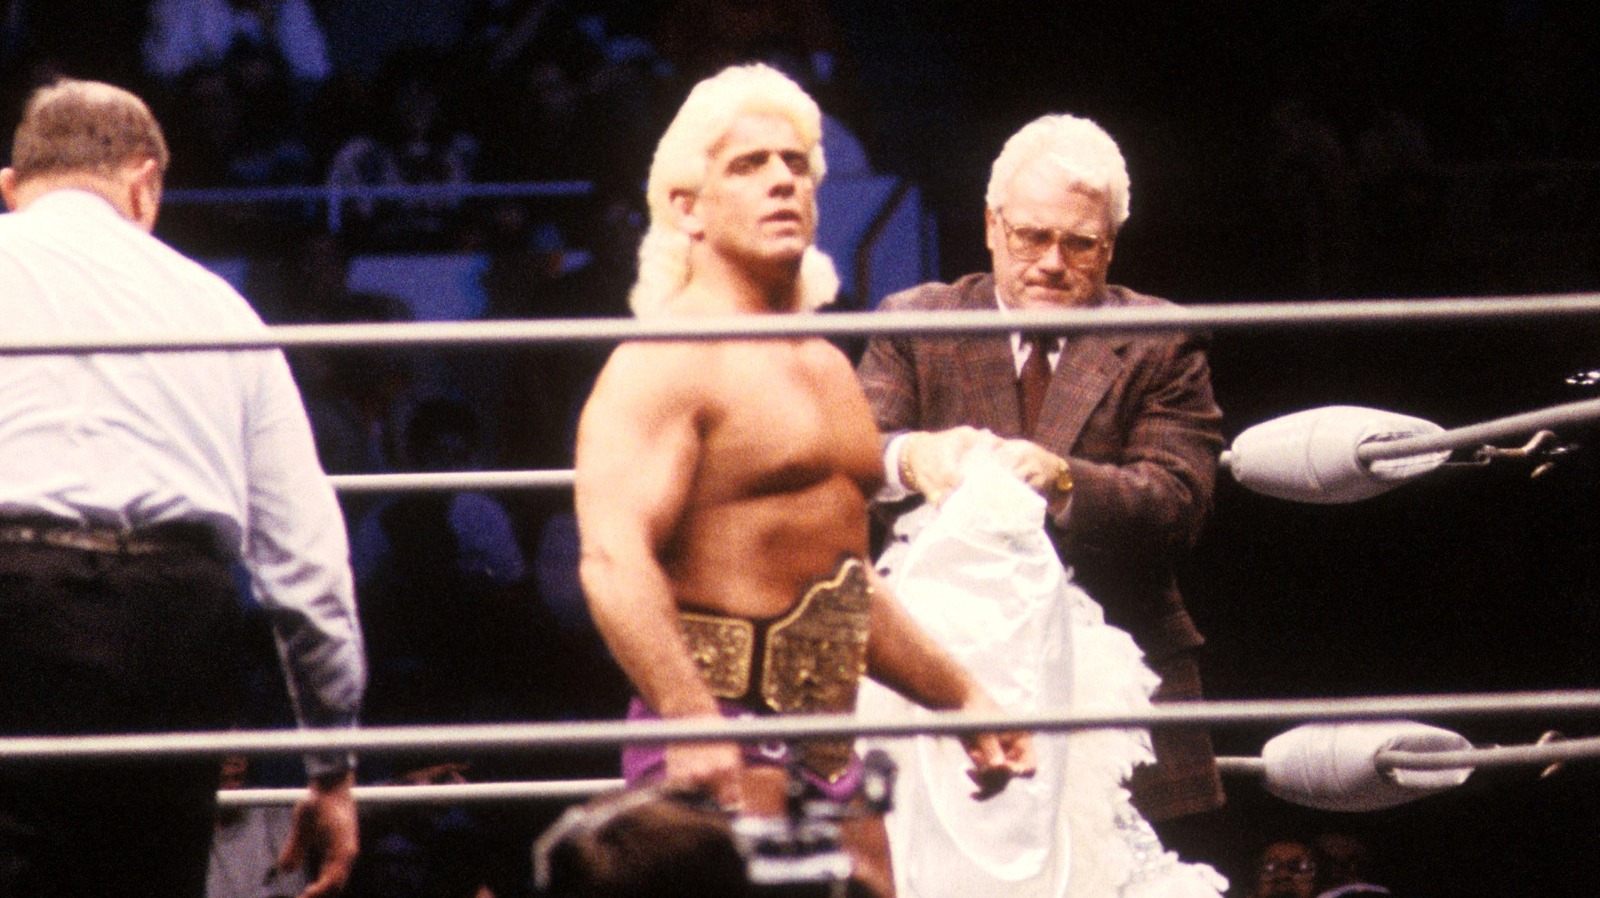 Lex Luger habla sobre ganar el título mundial en WCW luego de la partida de Ric Flair a WWF